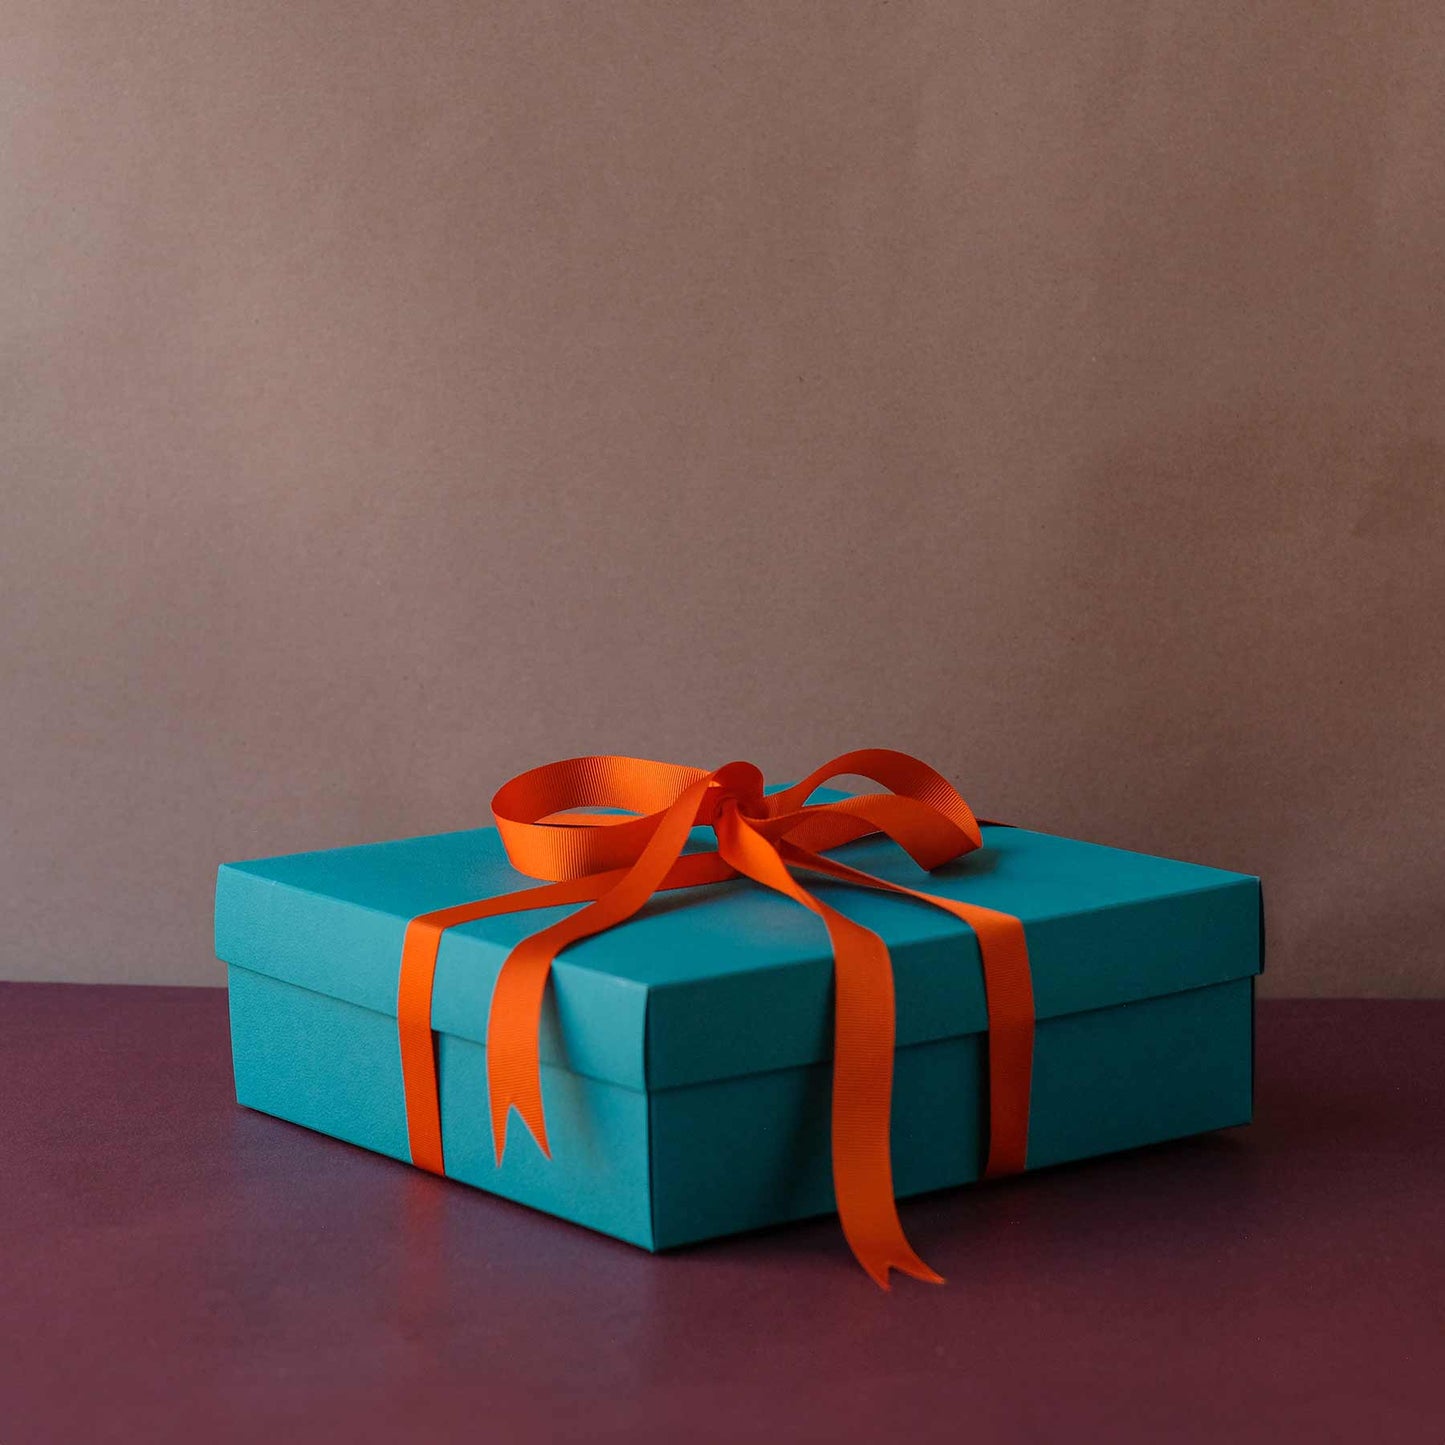 Large Gift Box - Teal with orange ribbon